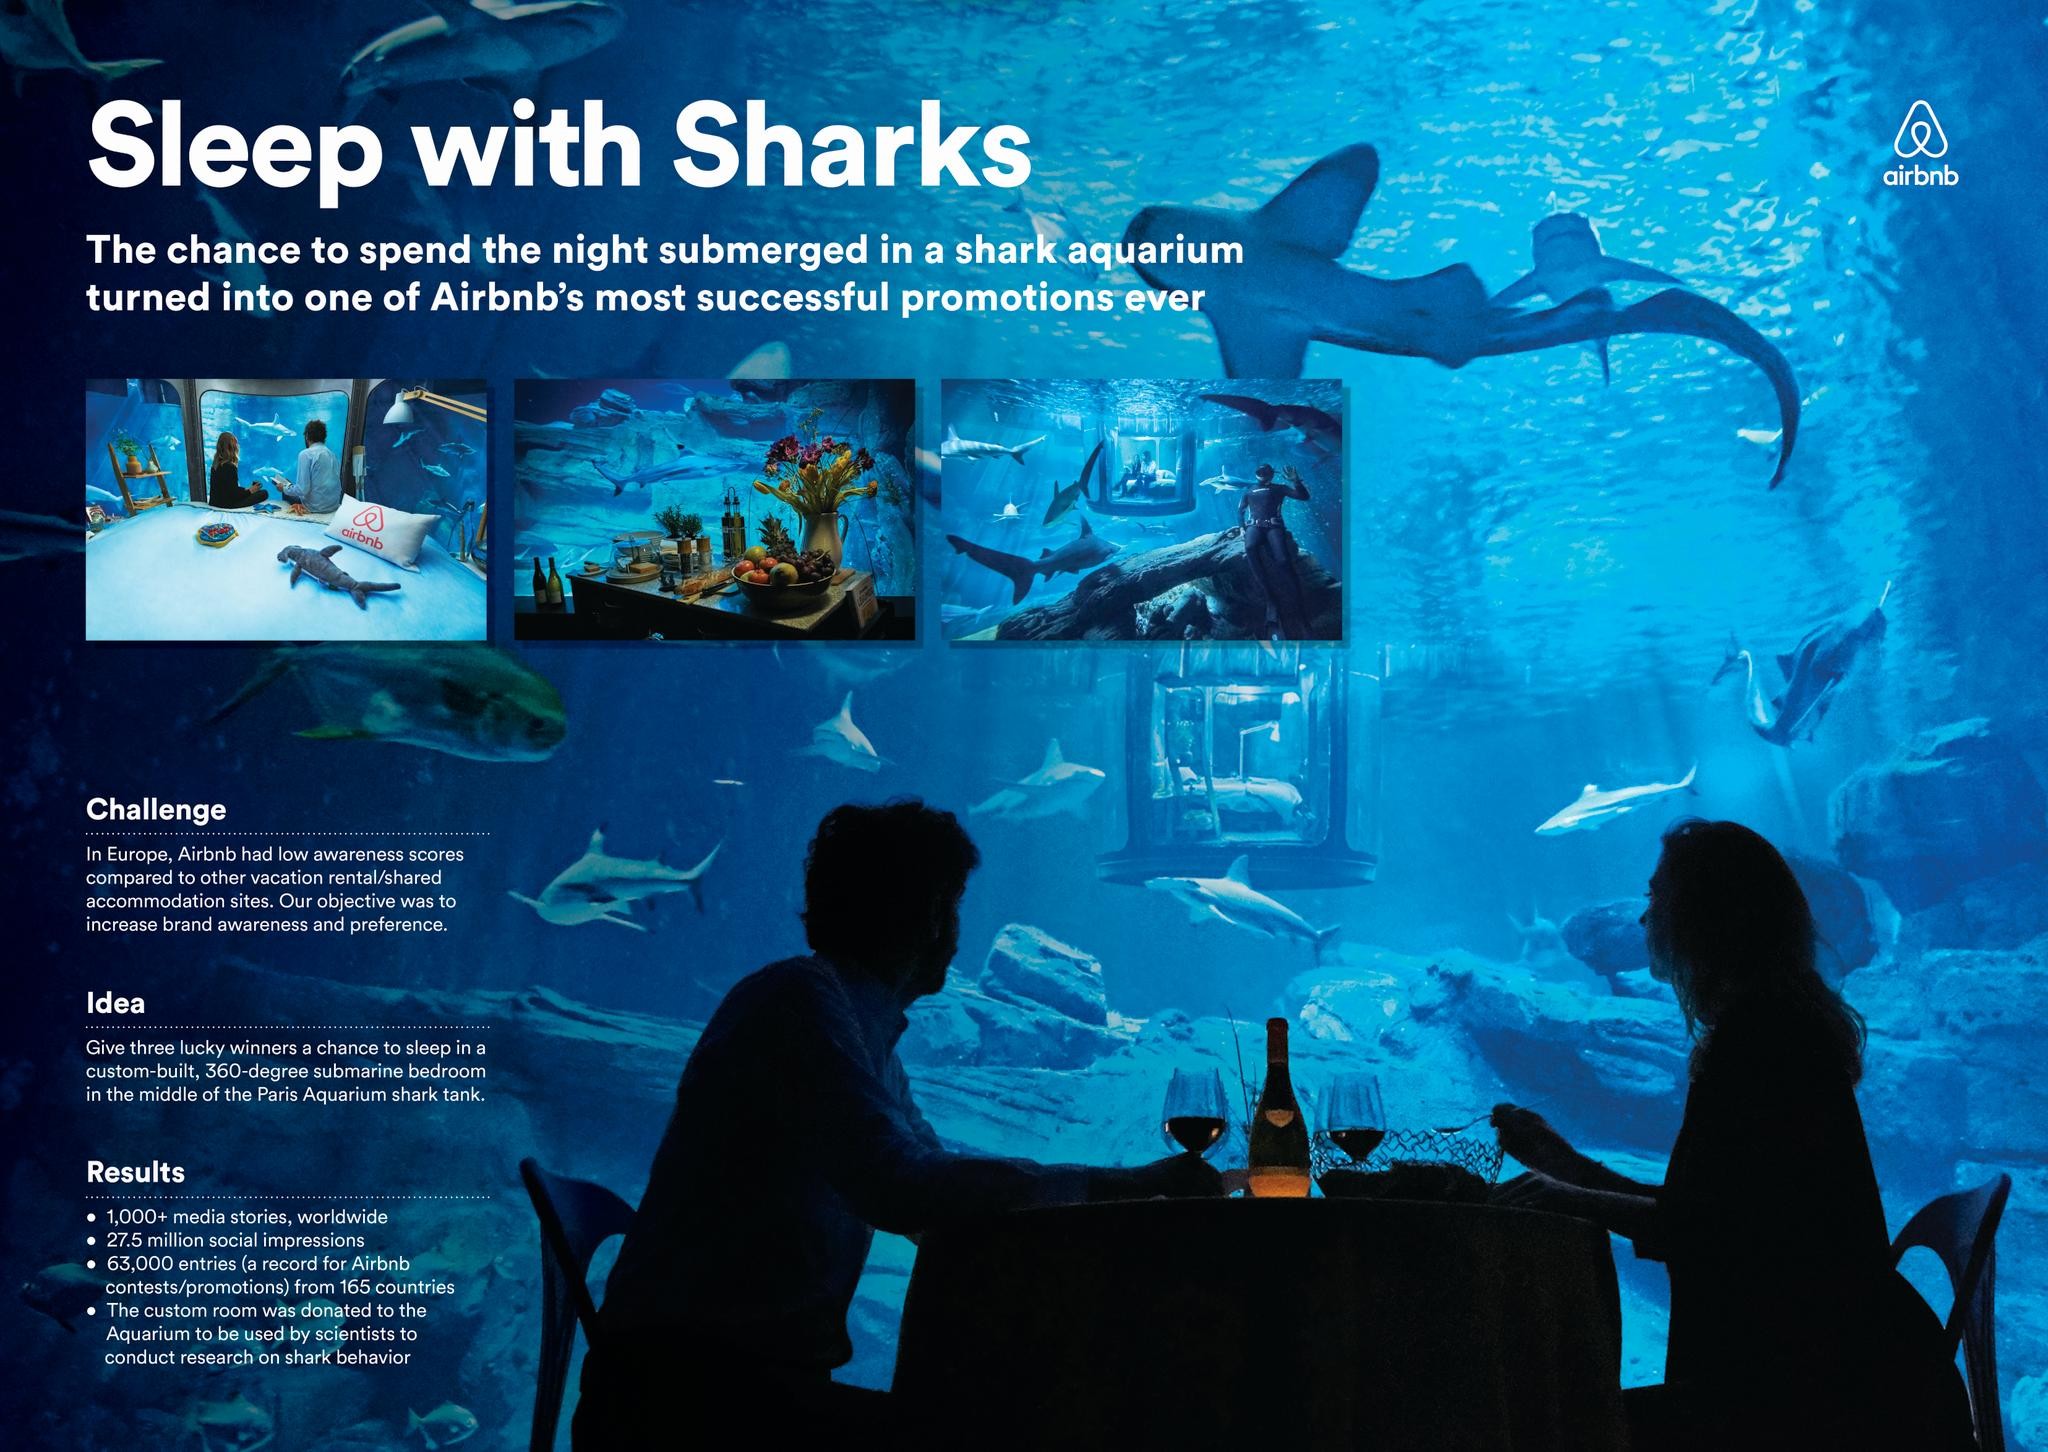 Night at The Shark Aquarium